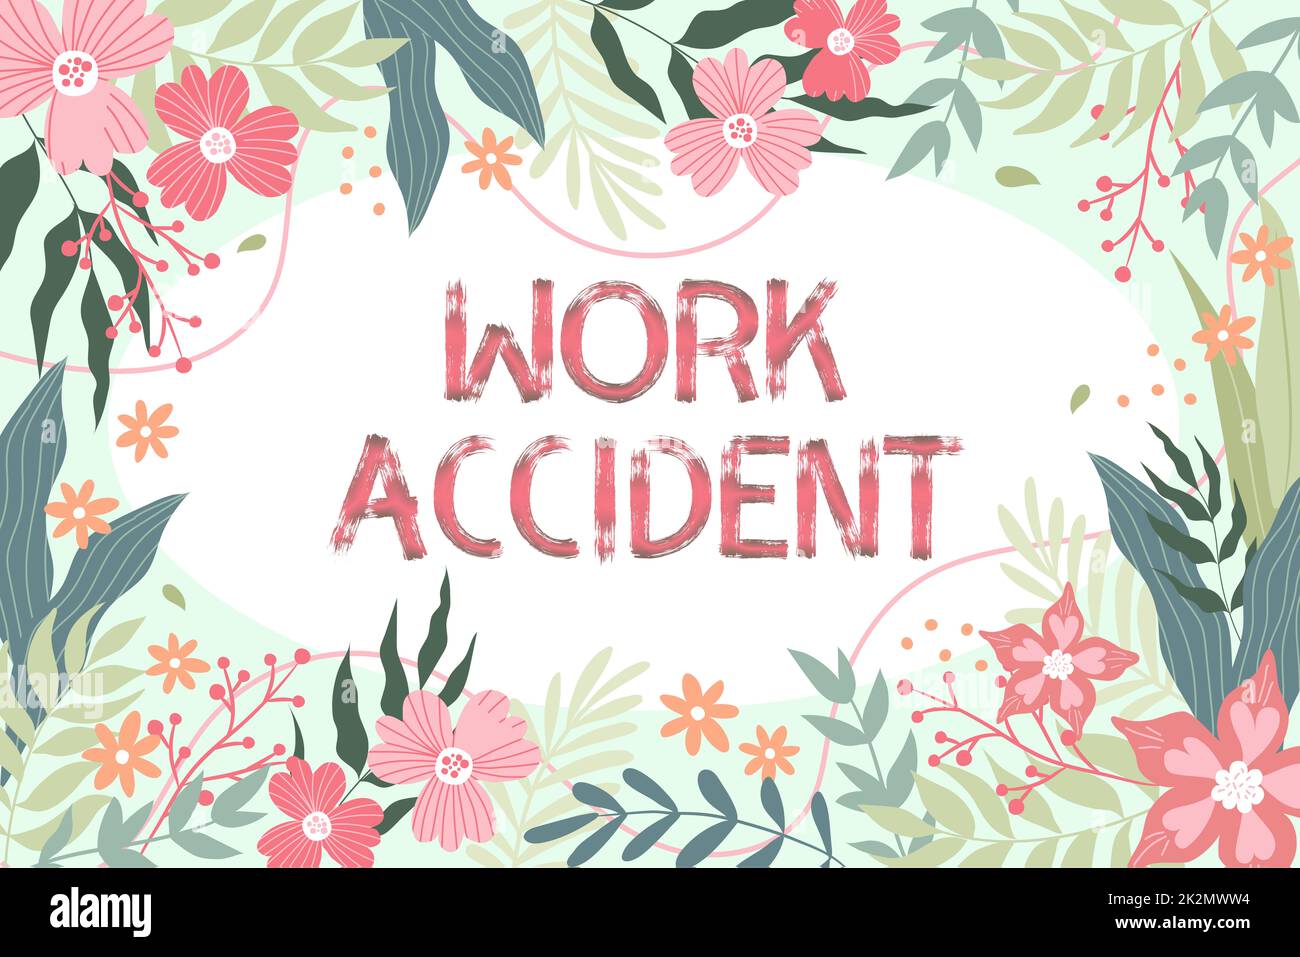 Konzeptionelle Beschriftung Arbeitsunfall. Konzept bedeutet Fehler Verletzung geschah am Arbeitsplatz Getting Hurt Frame dekoriert mit farbenfrohen Blumen und Blattwerk harmonisch angeordnet. Stockfoto